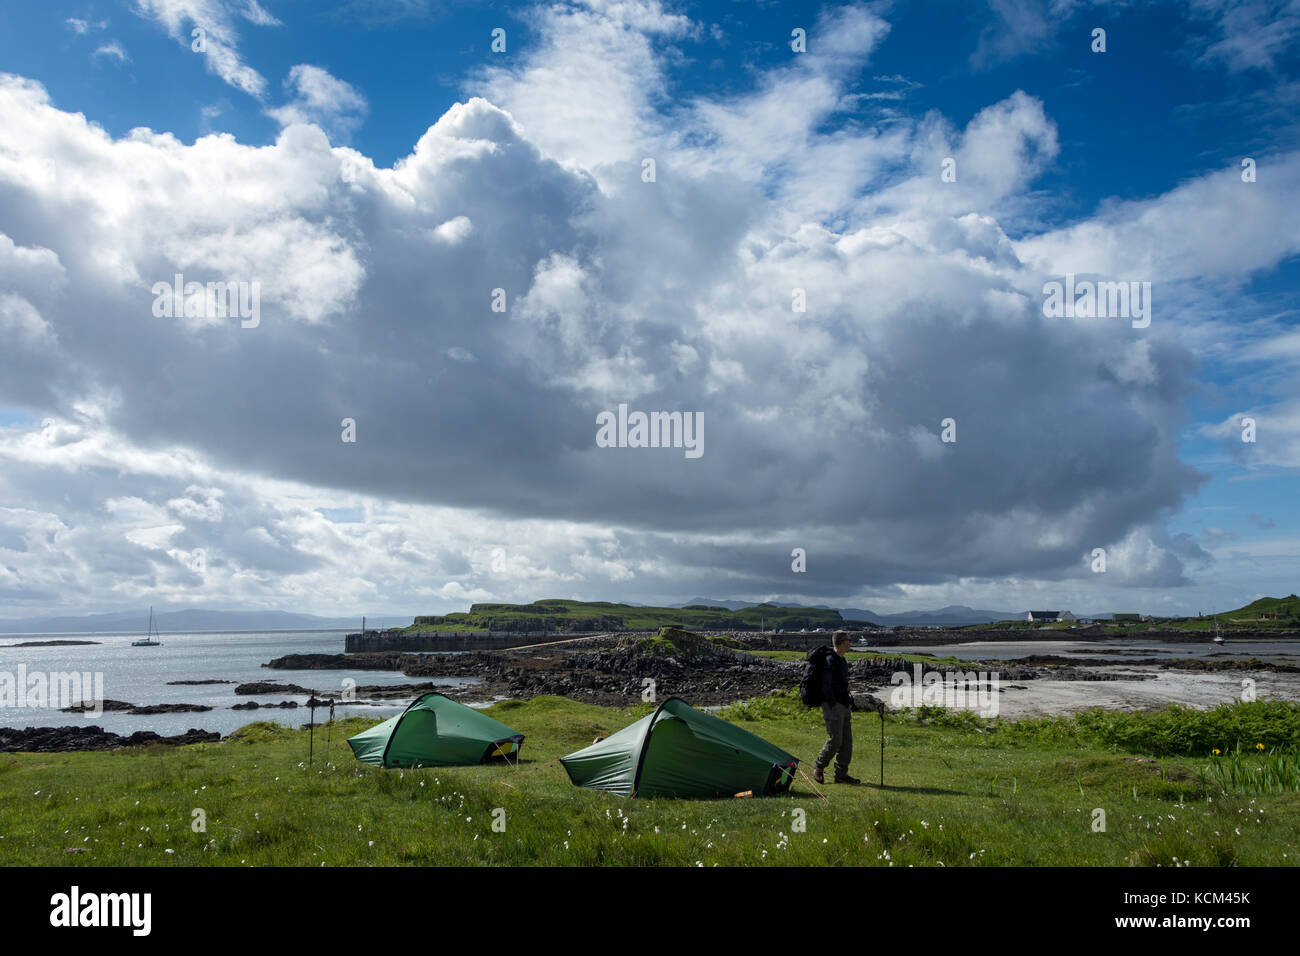 Due piccoli Hilleberg Akto tende sulla zona campeggio a Galmisdale Bay sull'Isola di Eigg, Scotland, Regno Unito Foto Stock